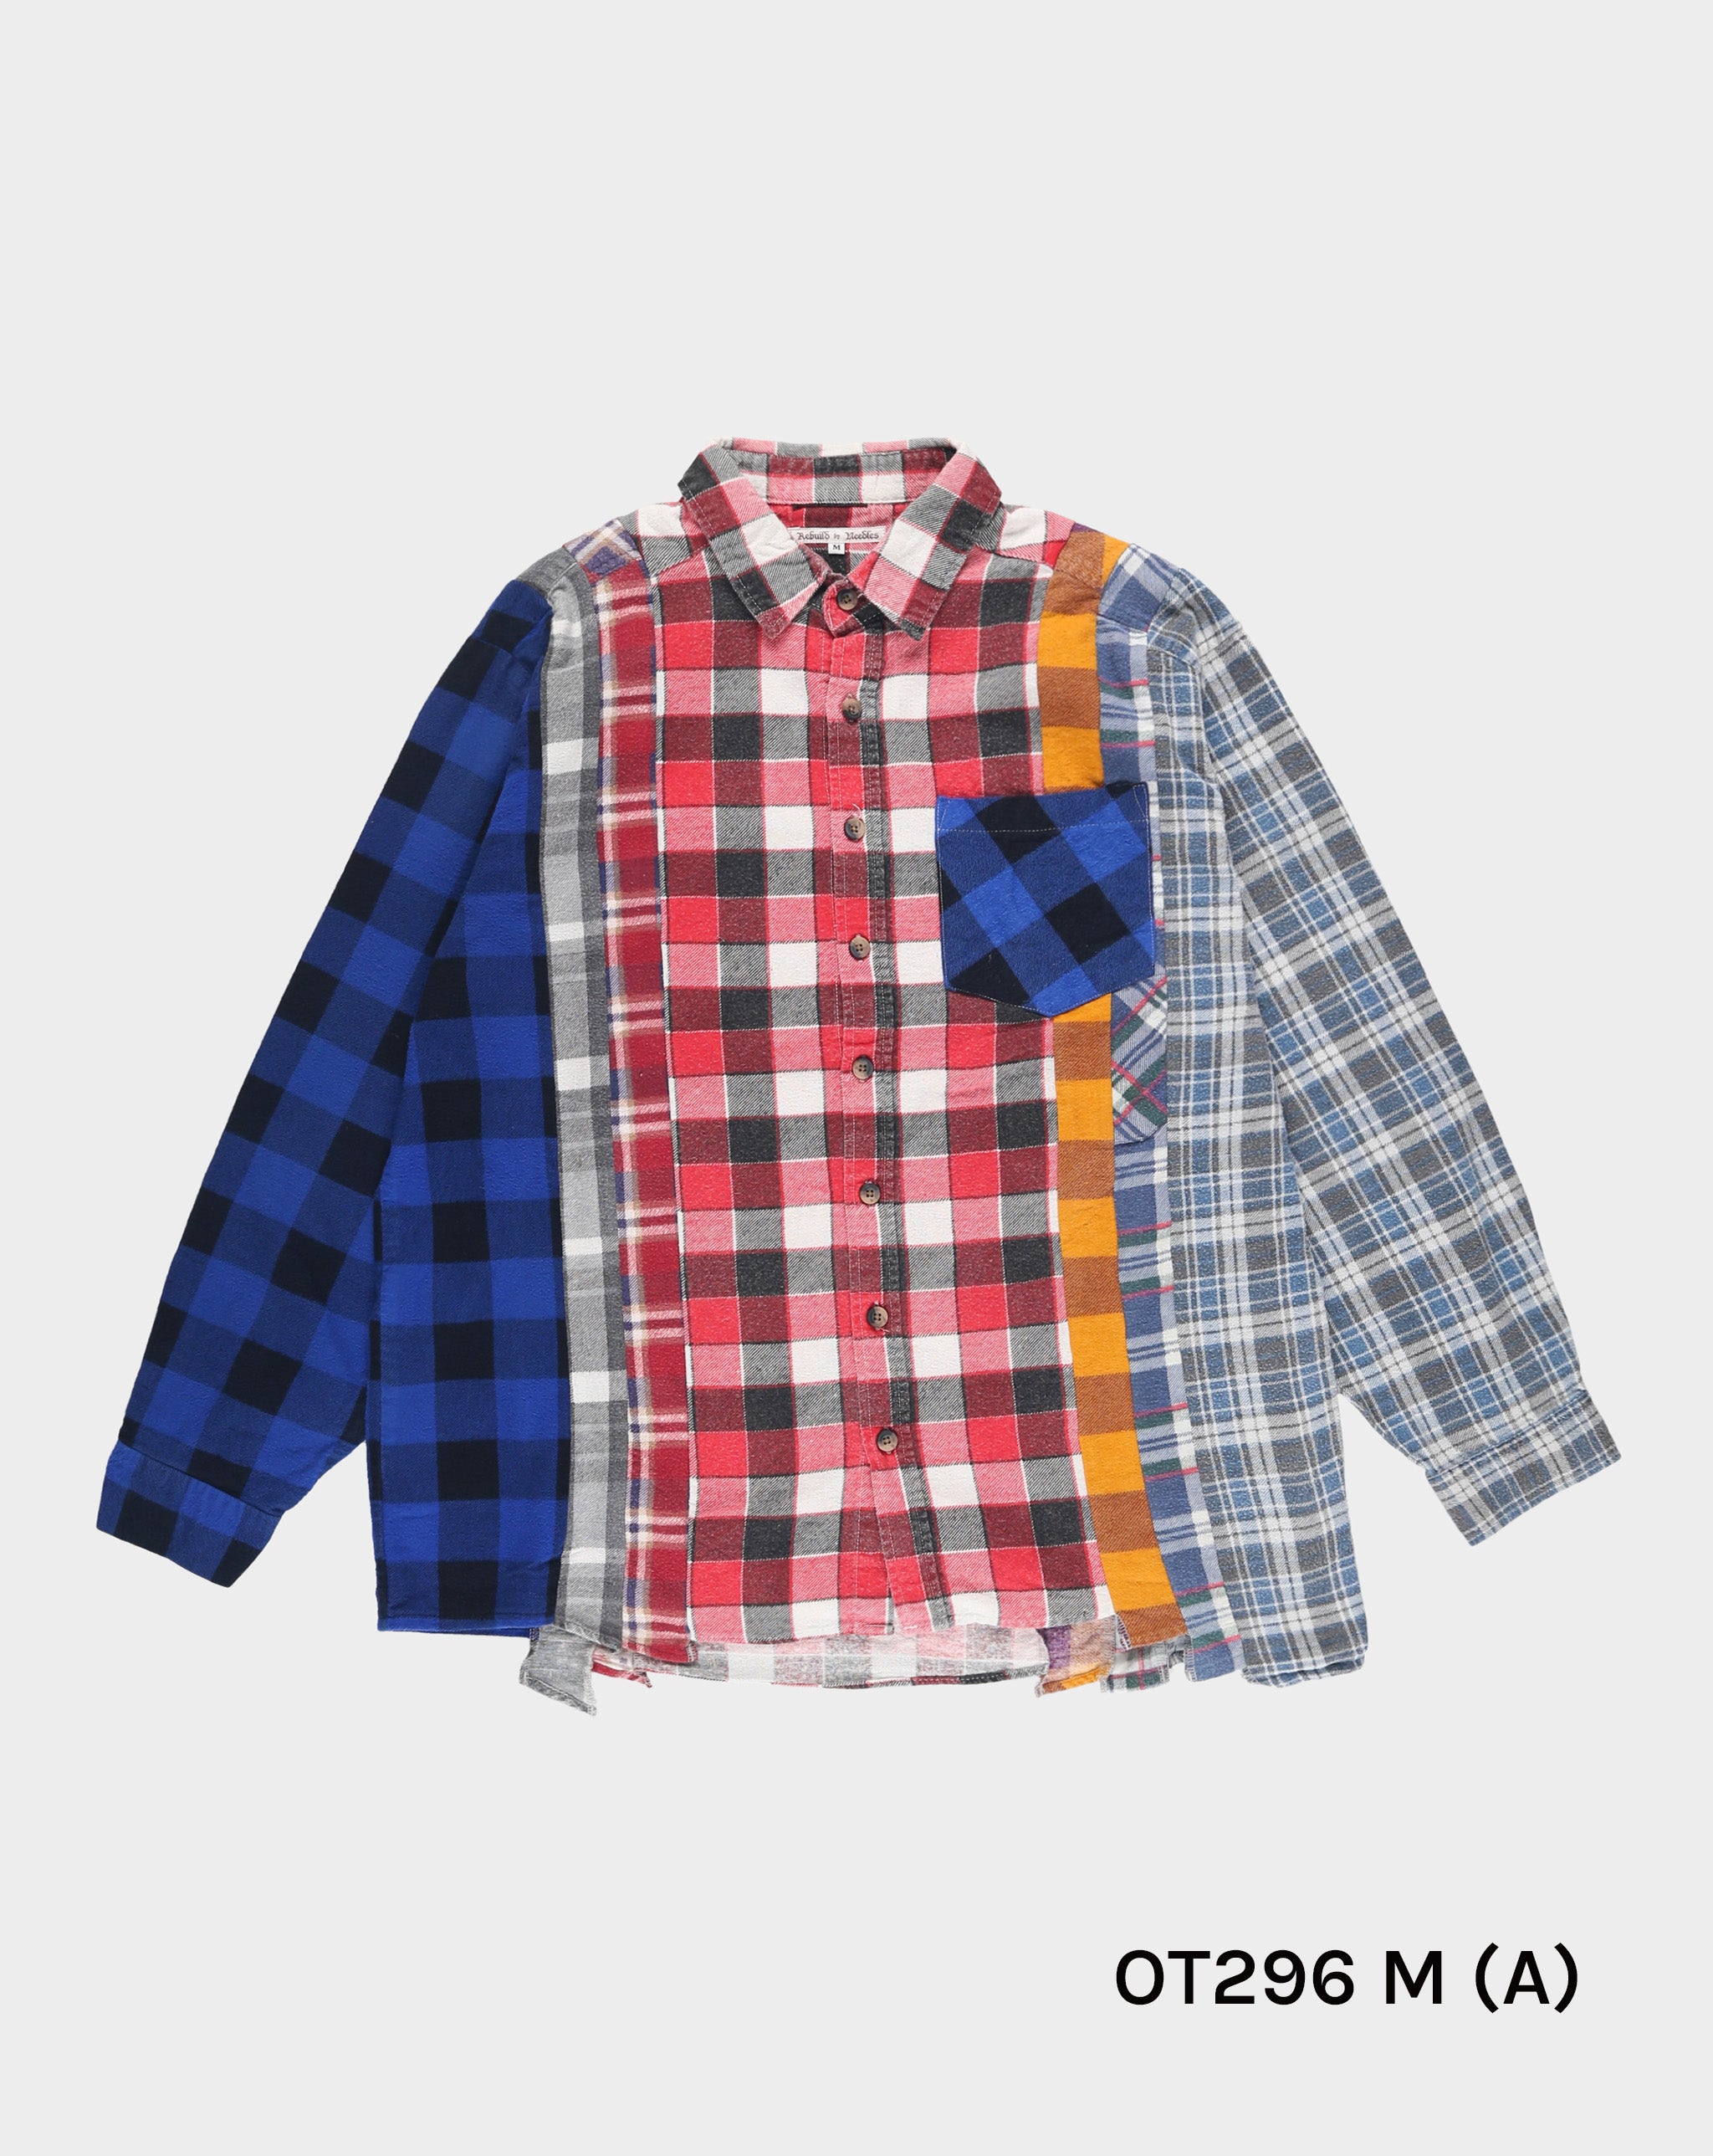 Needles 7 Cuts Flannel Shirt  - Cheap 127-0 Jordan outlet